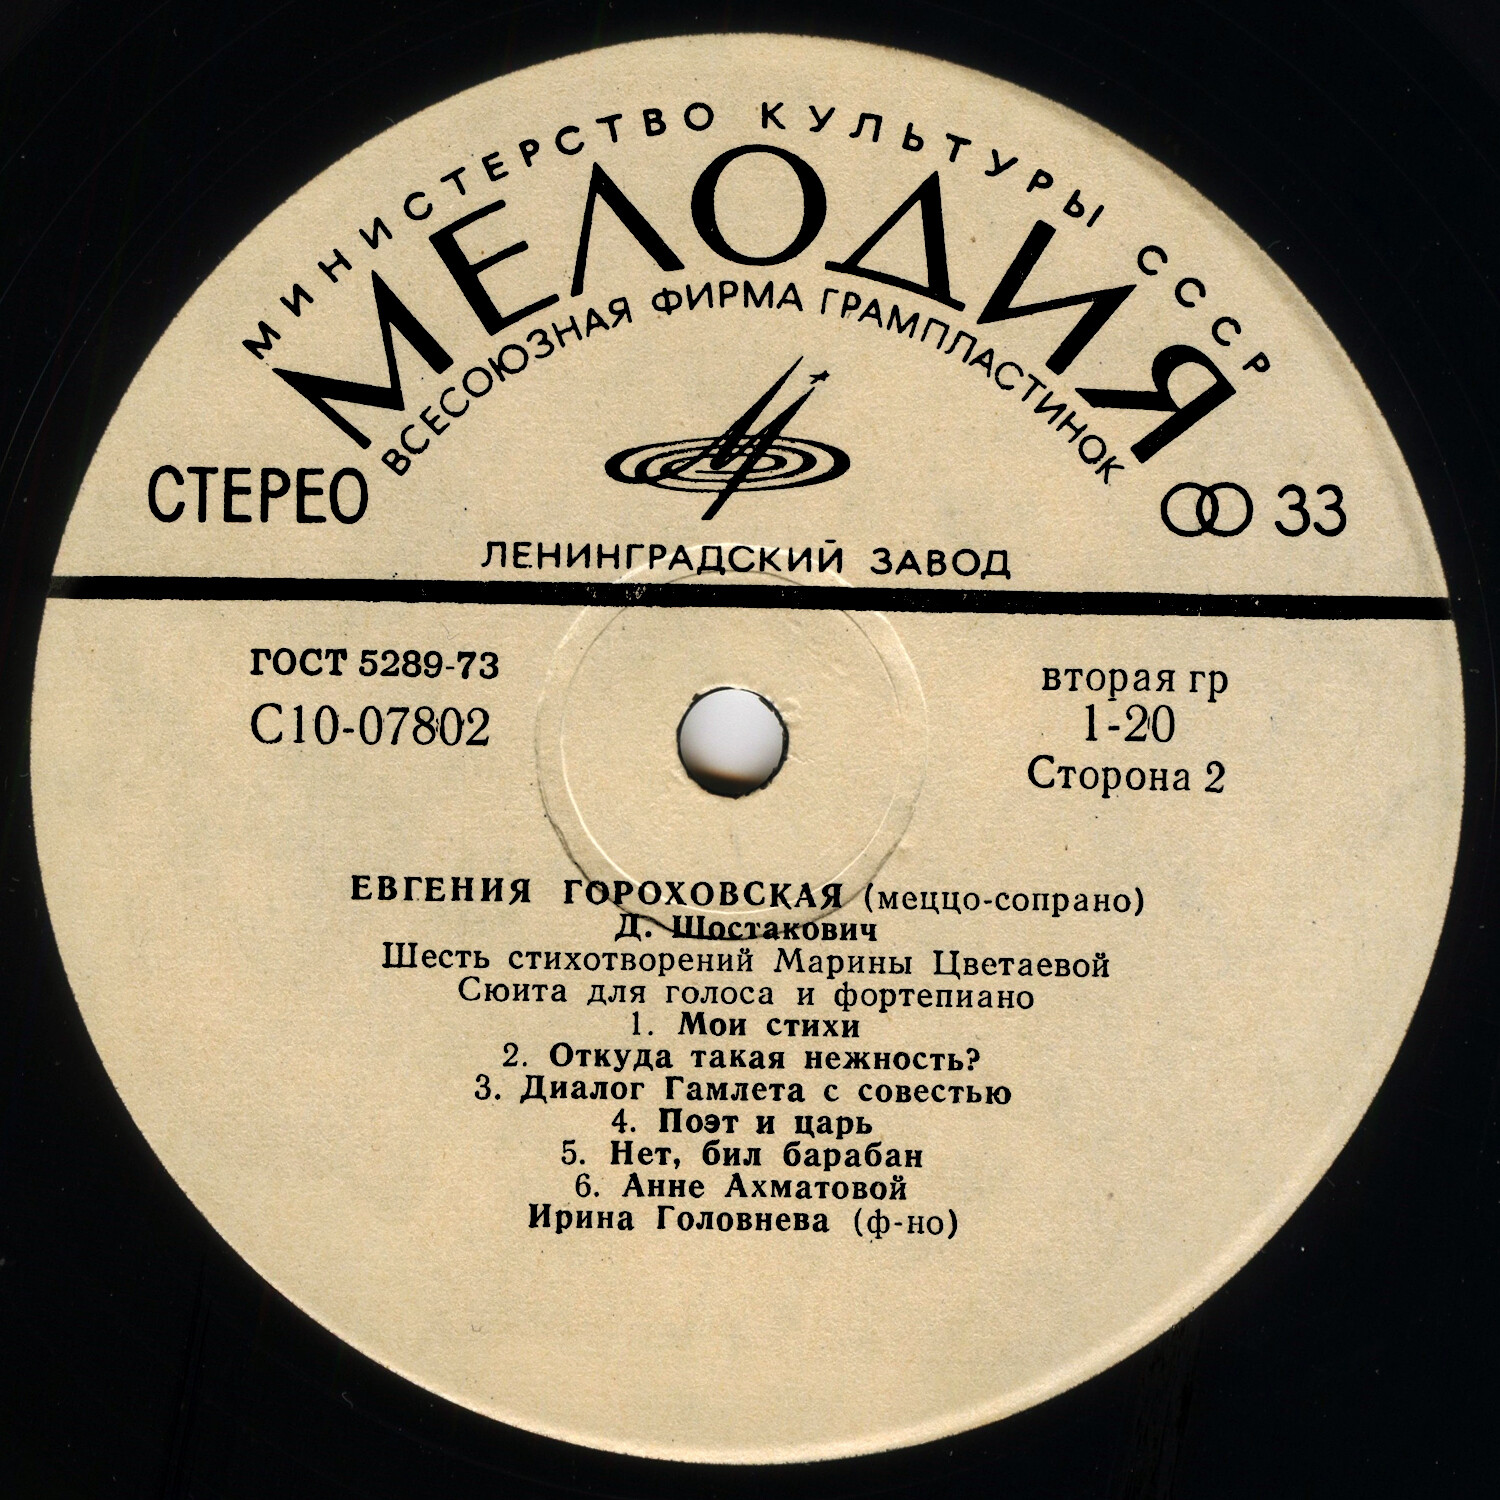 Евгения Гороховская, меццо-сопрано